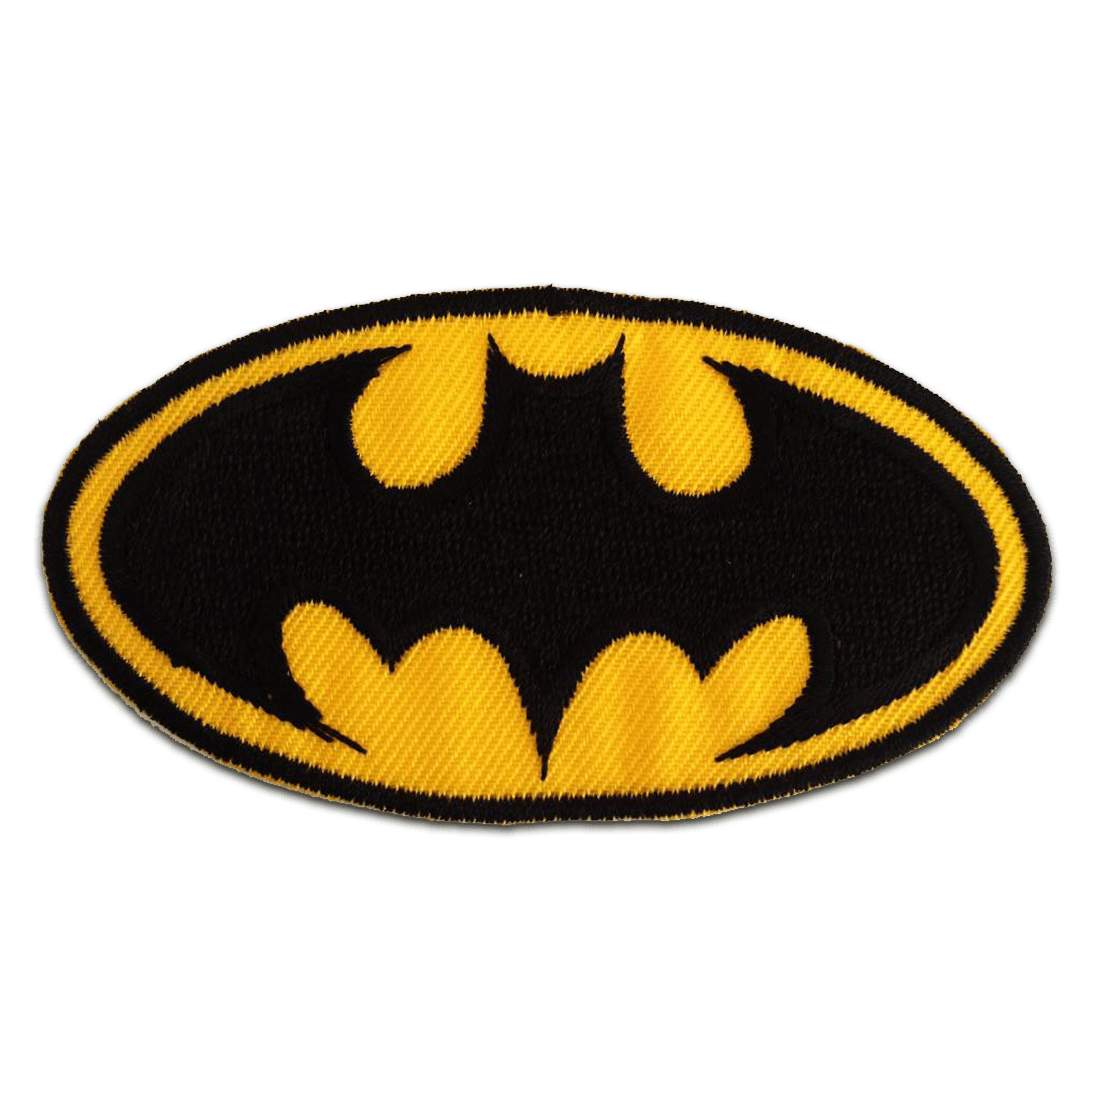 Batman Logo Superman Clip art - batman png download - 1100*1100 - Free  Transparent Batman png Download. - Clip Art Library